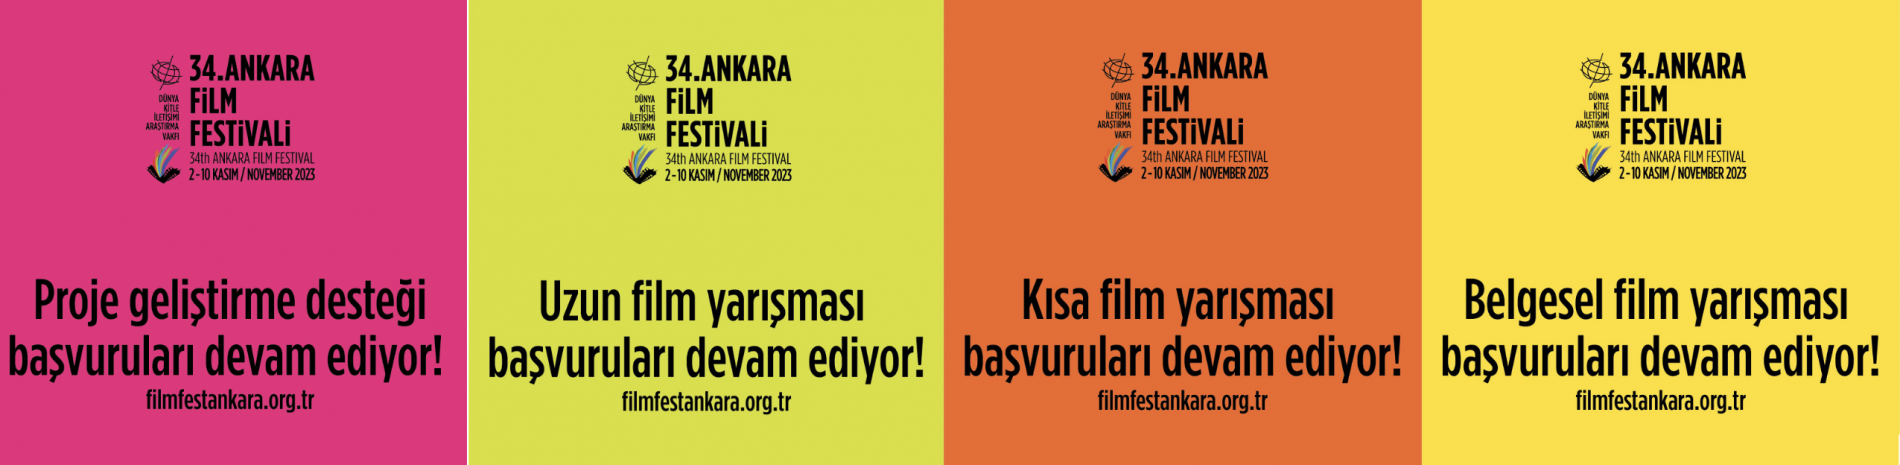 34. Ankara Film Festivali ulusal film yarışma başvuruları devam ediyor!